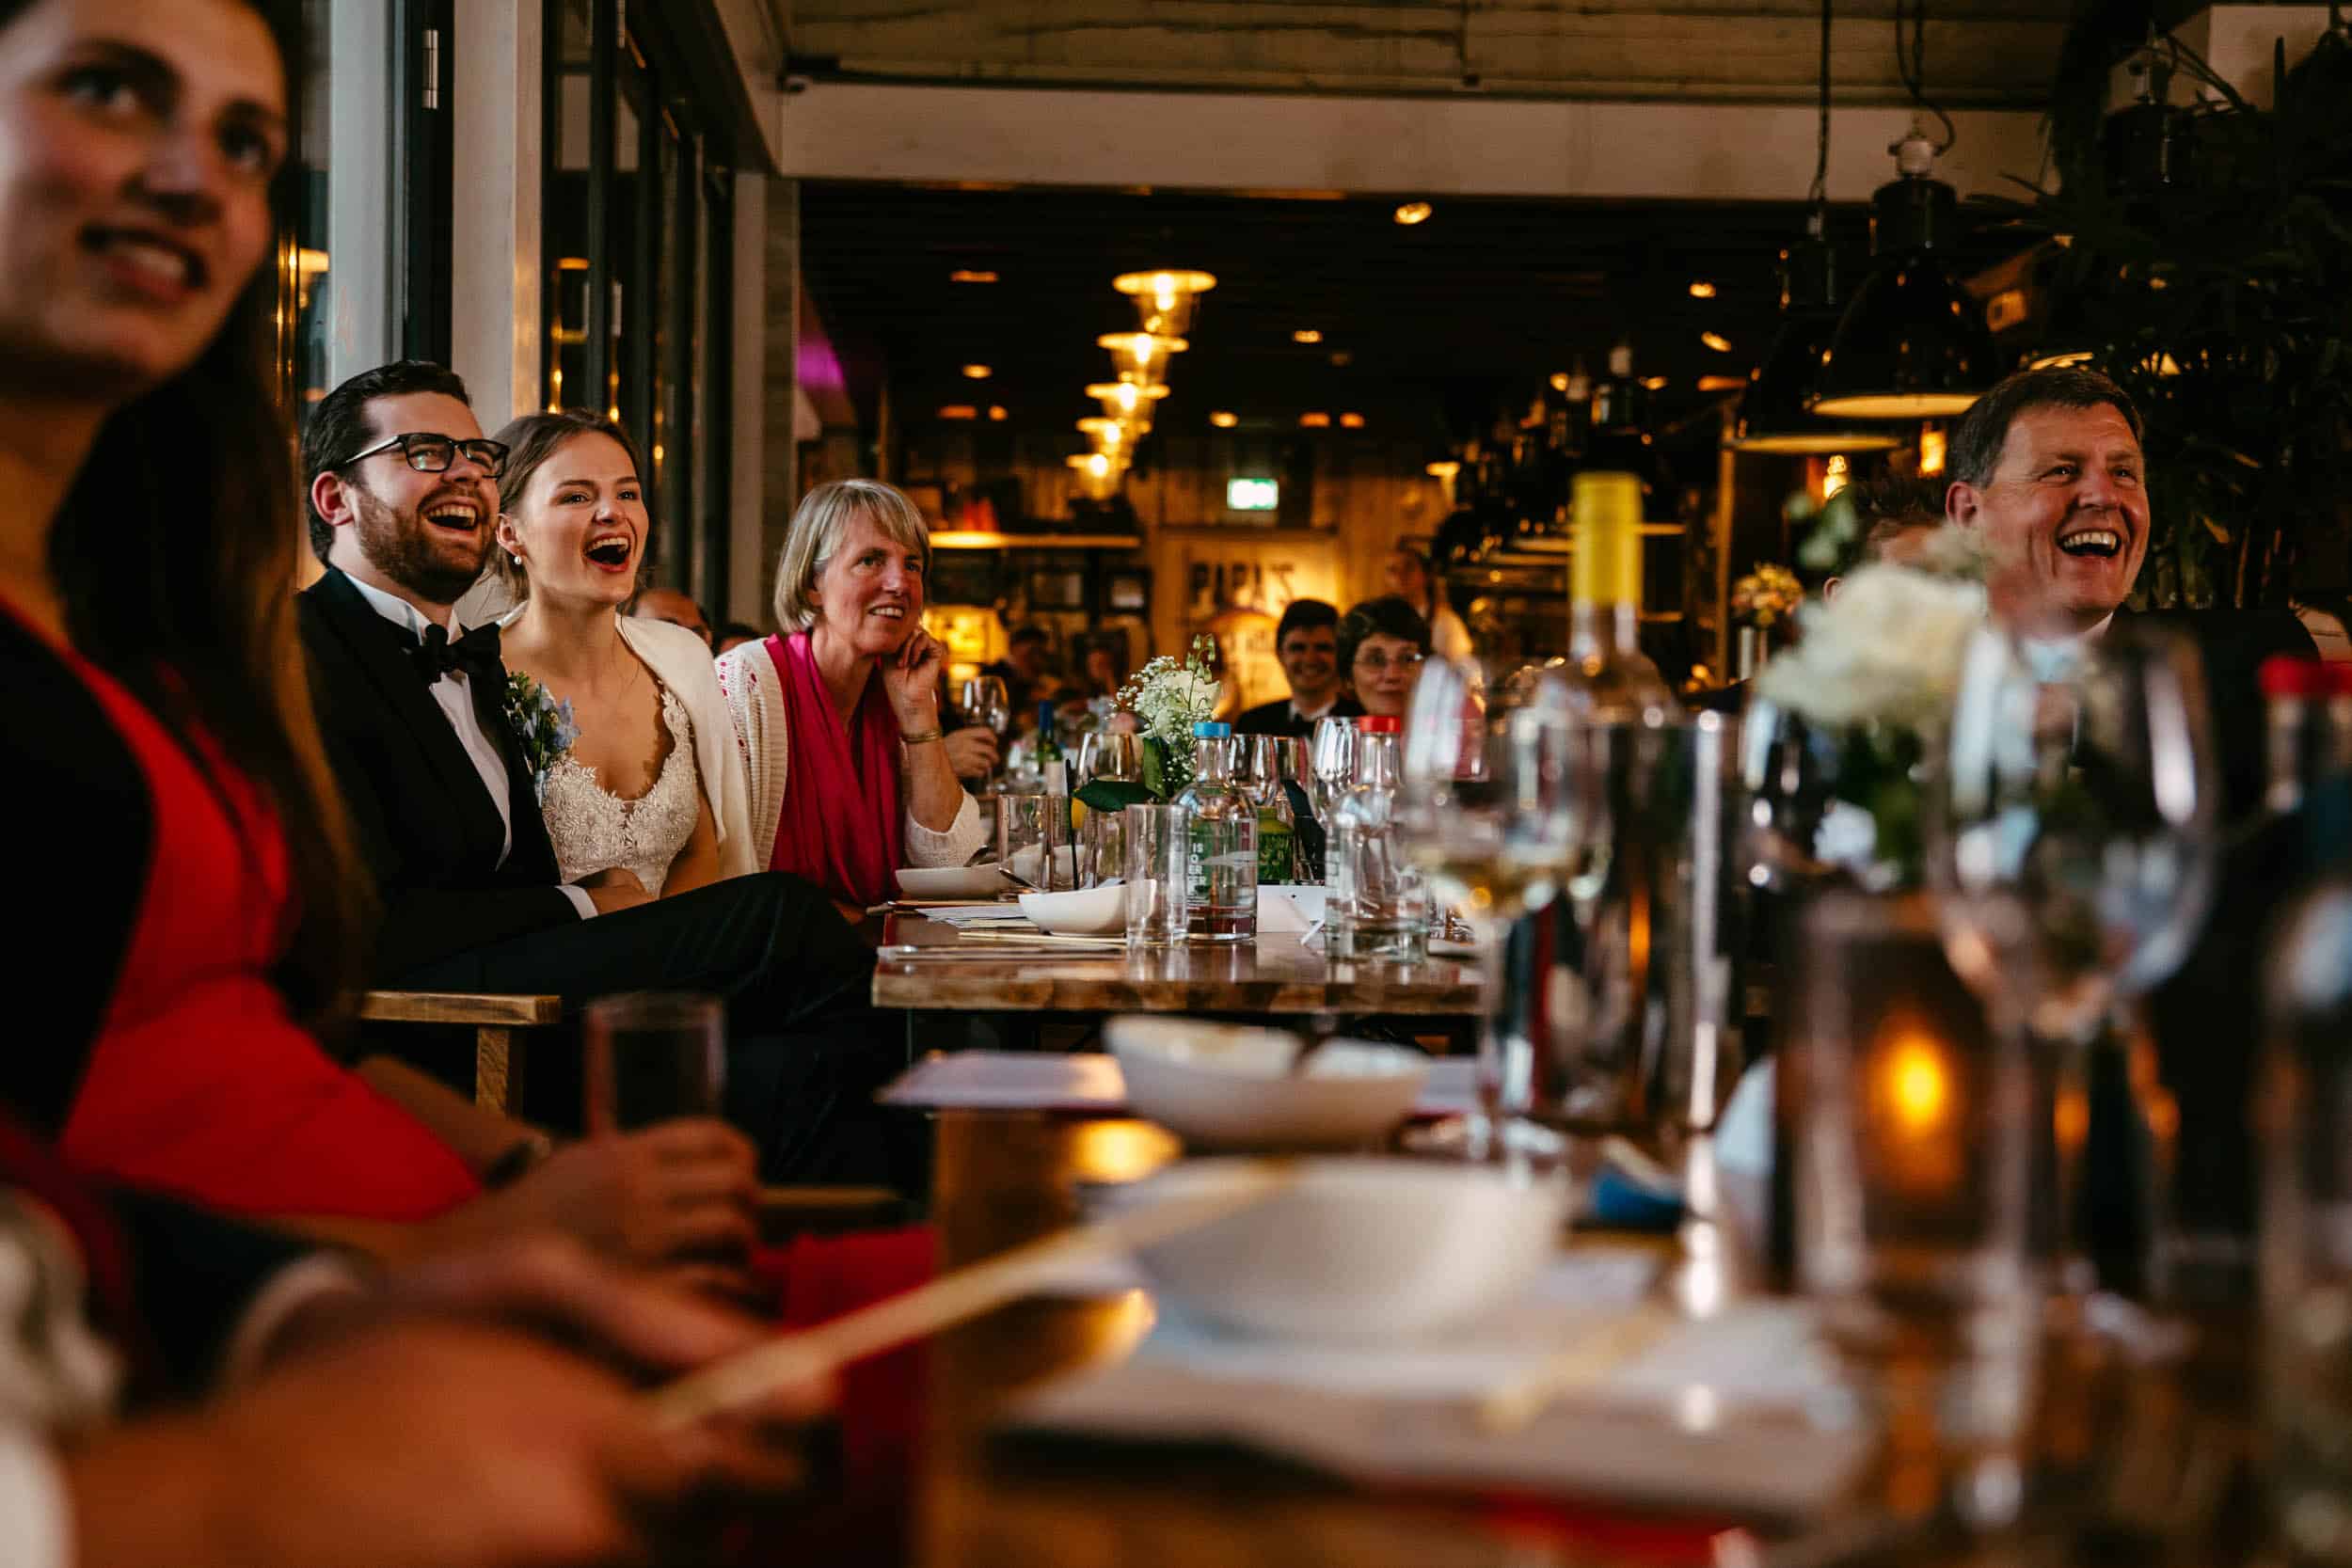 Een groep mensen lachend aan een tafel in een restaurant in Trouwerij botanische tuin delft.